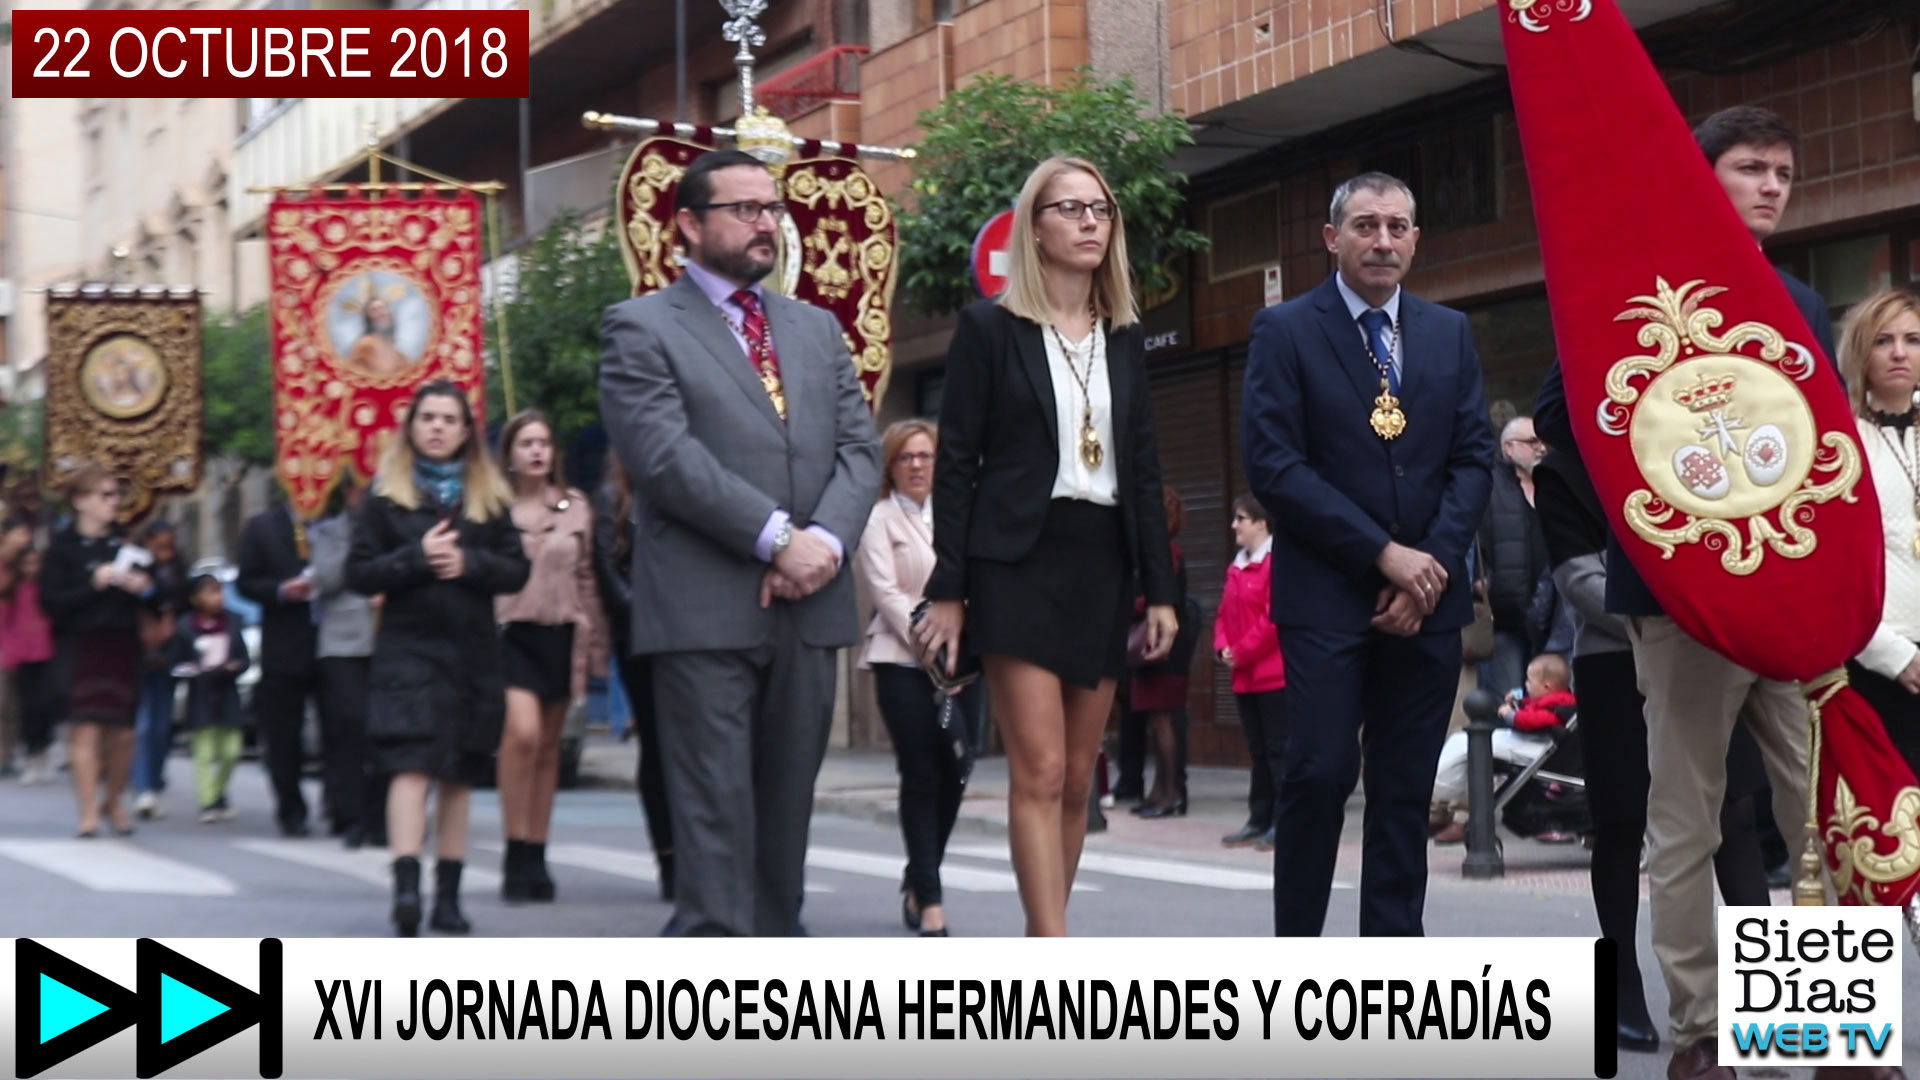 XVI JORNADA DIOCESANA DE HERMANDADES Y COFRADÍAS – 22 OCTUBRE 2018